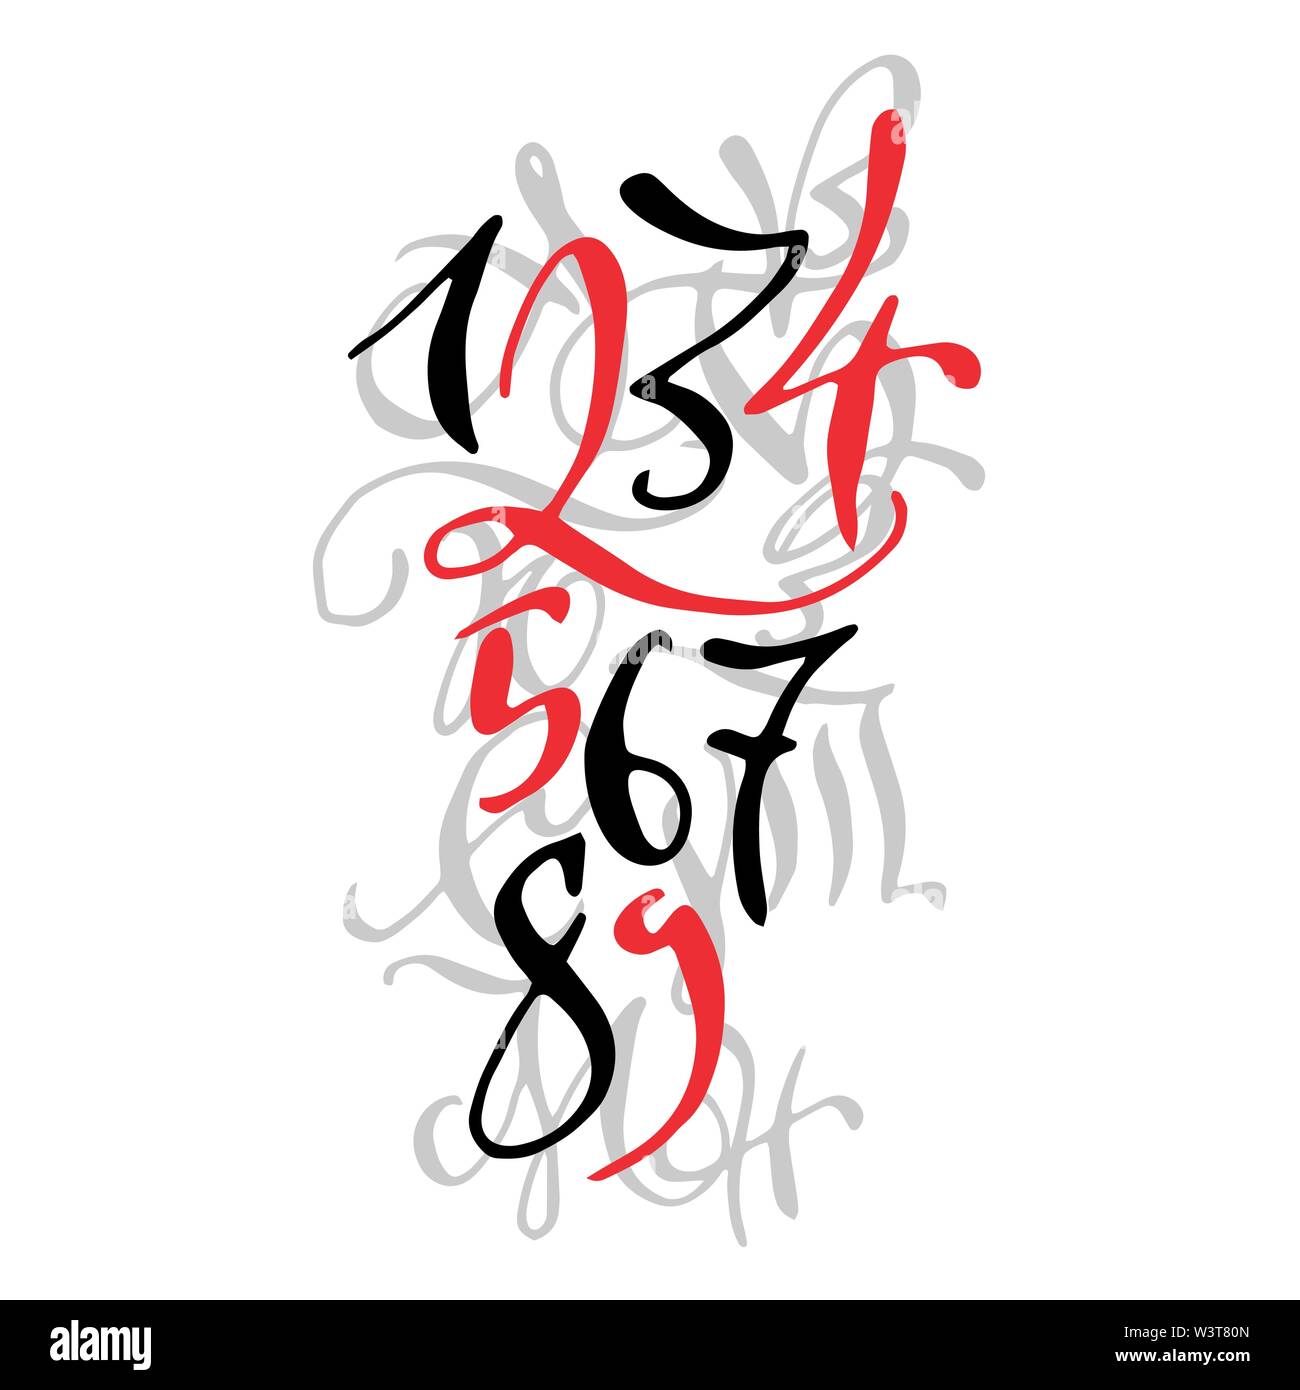 Nero e rosso stile arabo disegnati a mano di alta qualità calligraphy poster con i numeri. Isolato su sfondo bianco Illustrazione Vettoriale